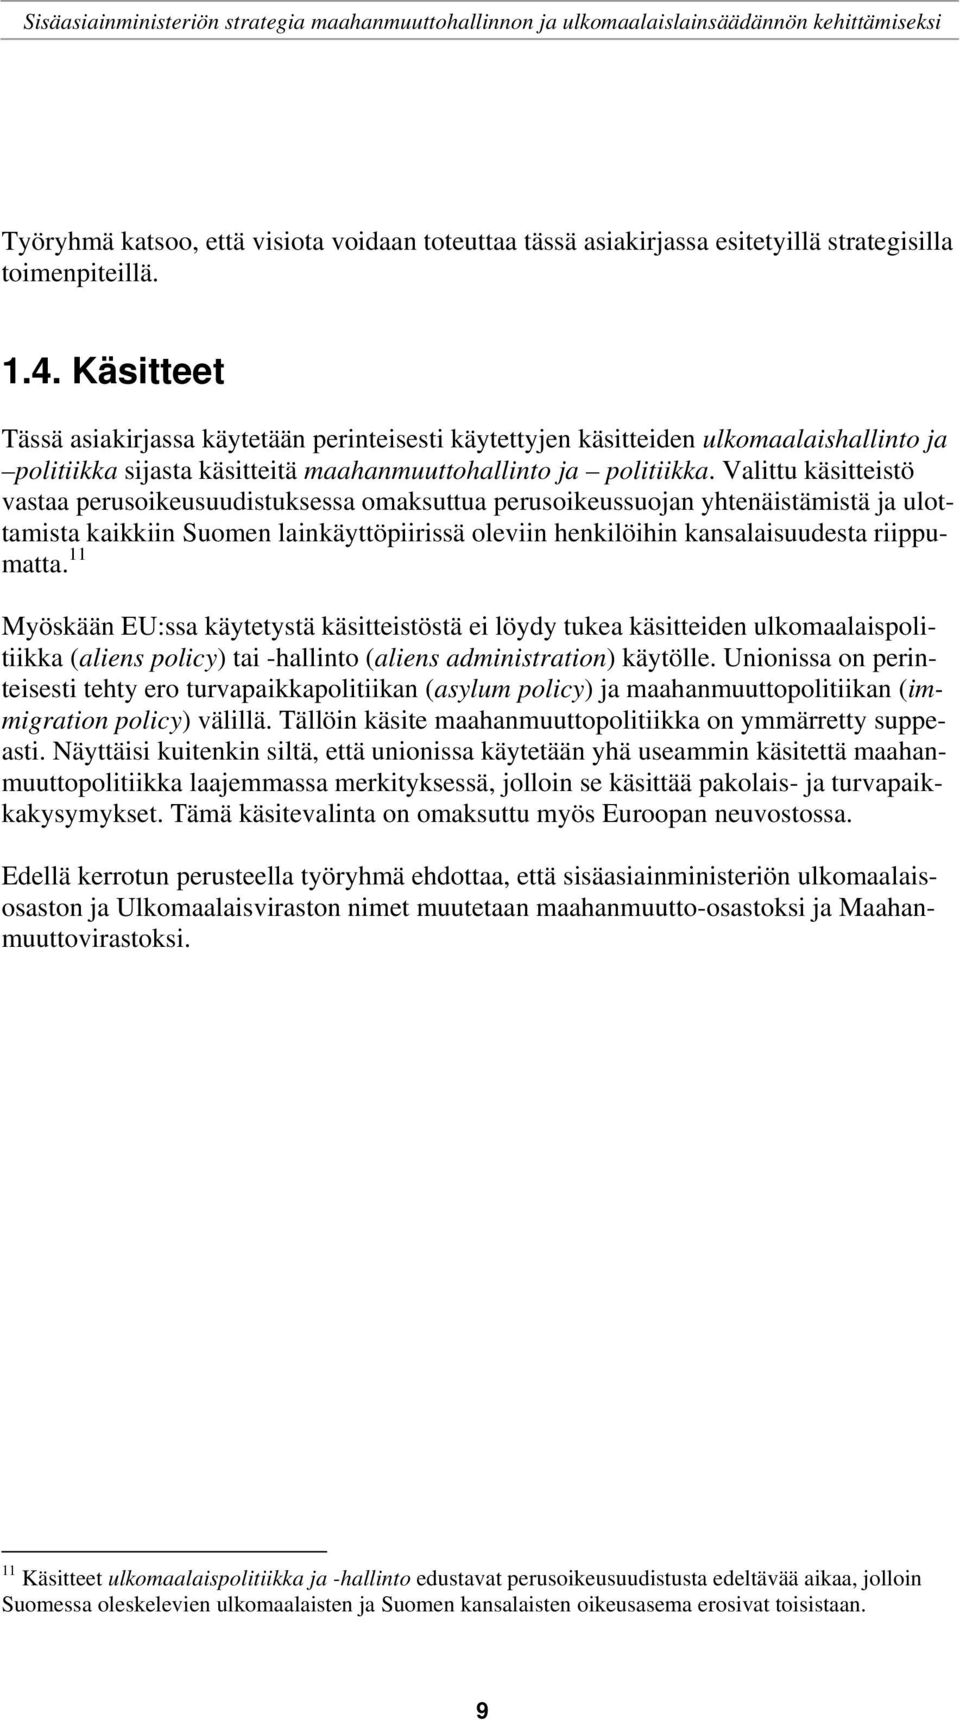 Valittu käsitteistö vastaa perusoikeusuudistuksessa omaksuttua perusoikeussuojan yhtenäistämistä ja ulottamista kaikkiin Suomen lainkäyttöpiirissä oleviin henkilöihin kansalaisuudesta riippumatta.